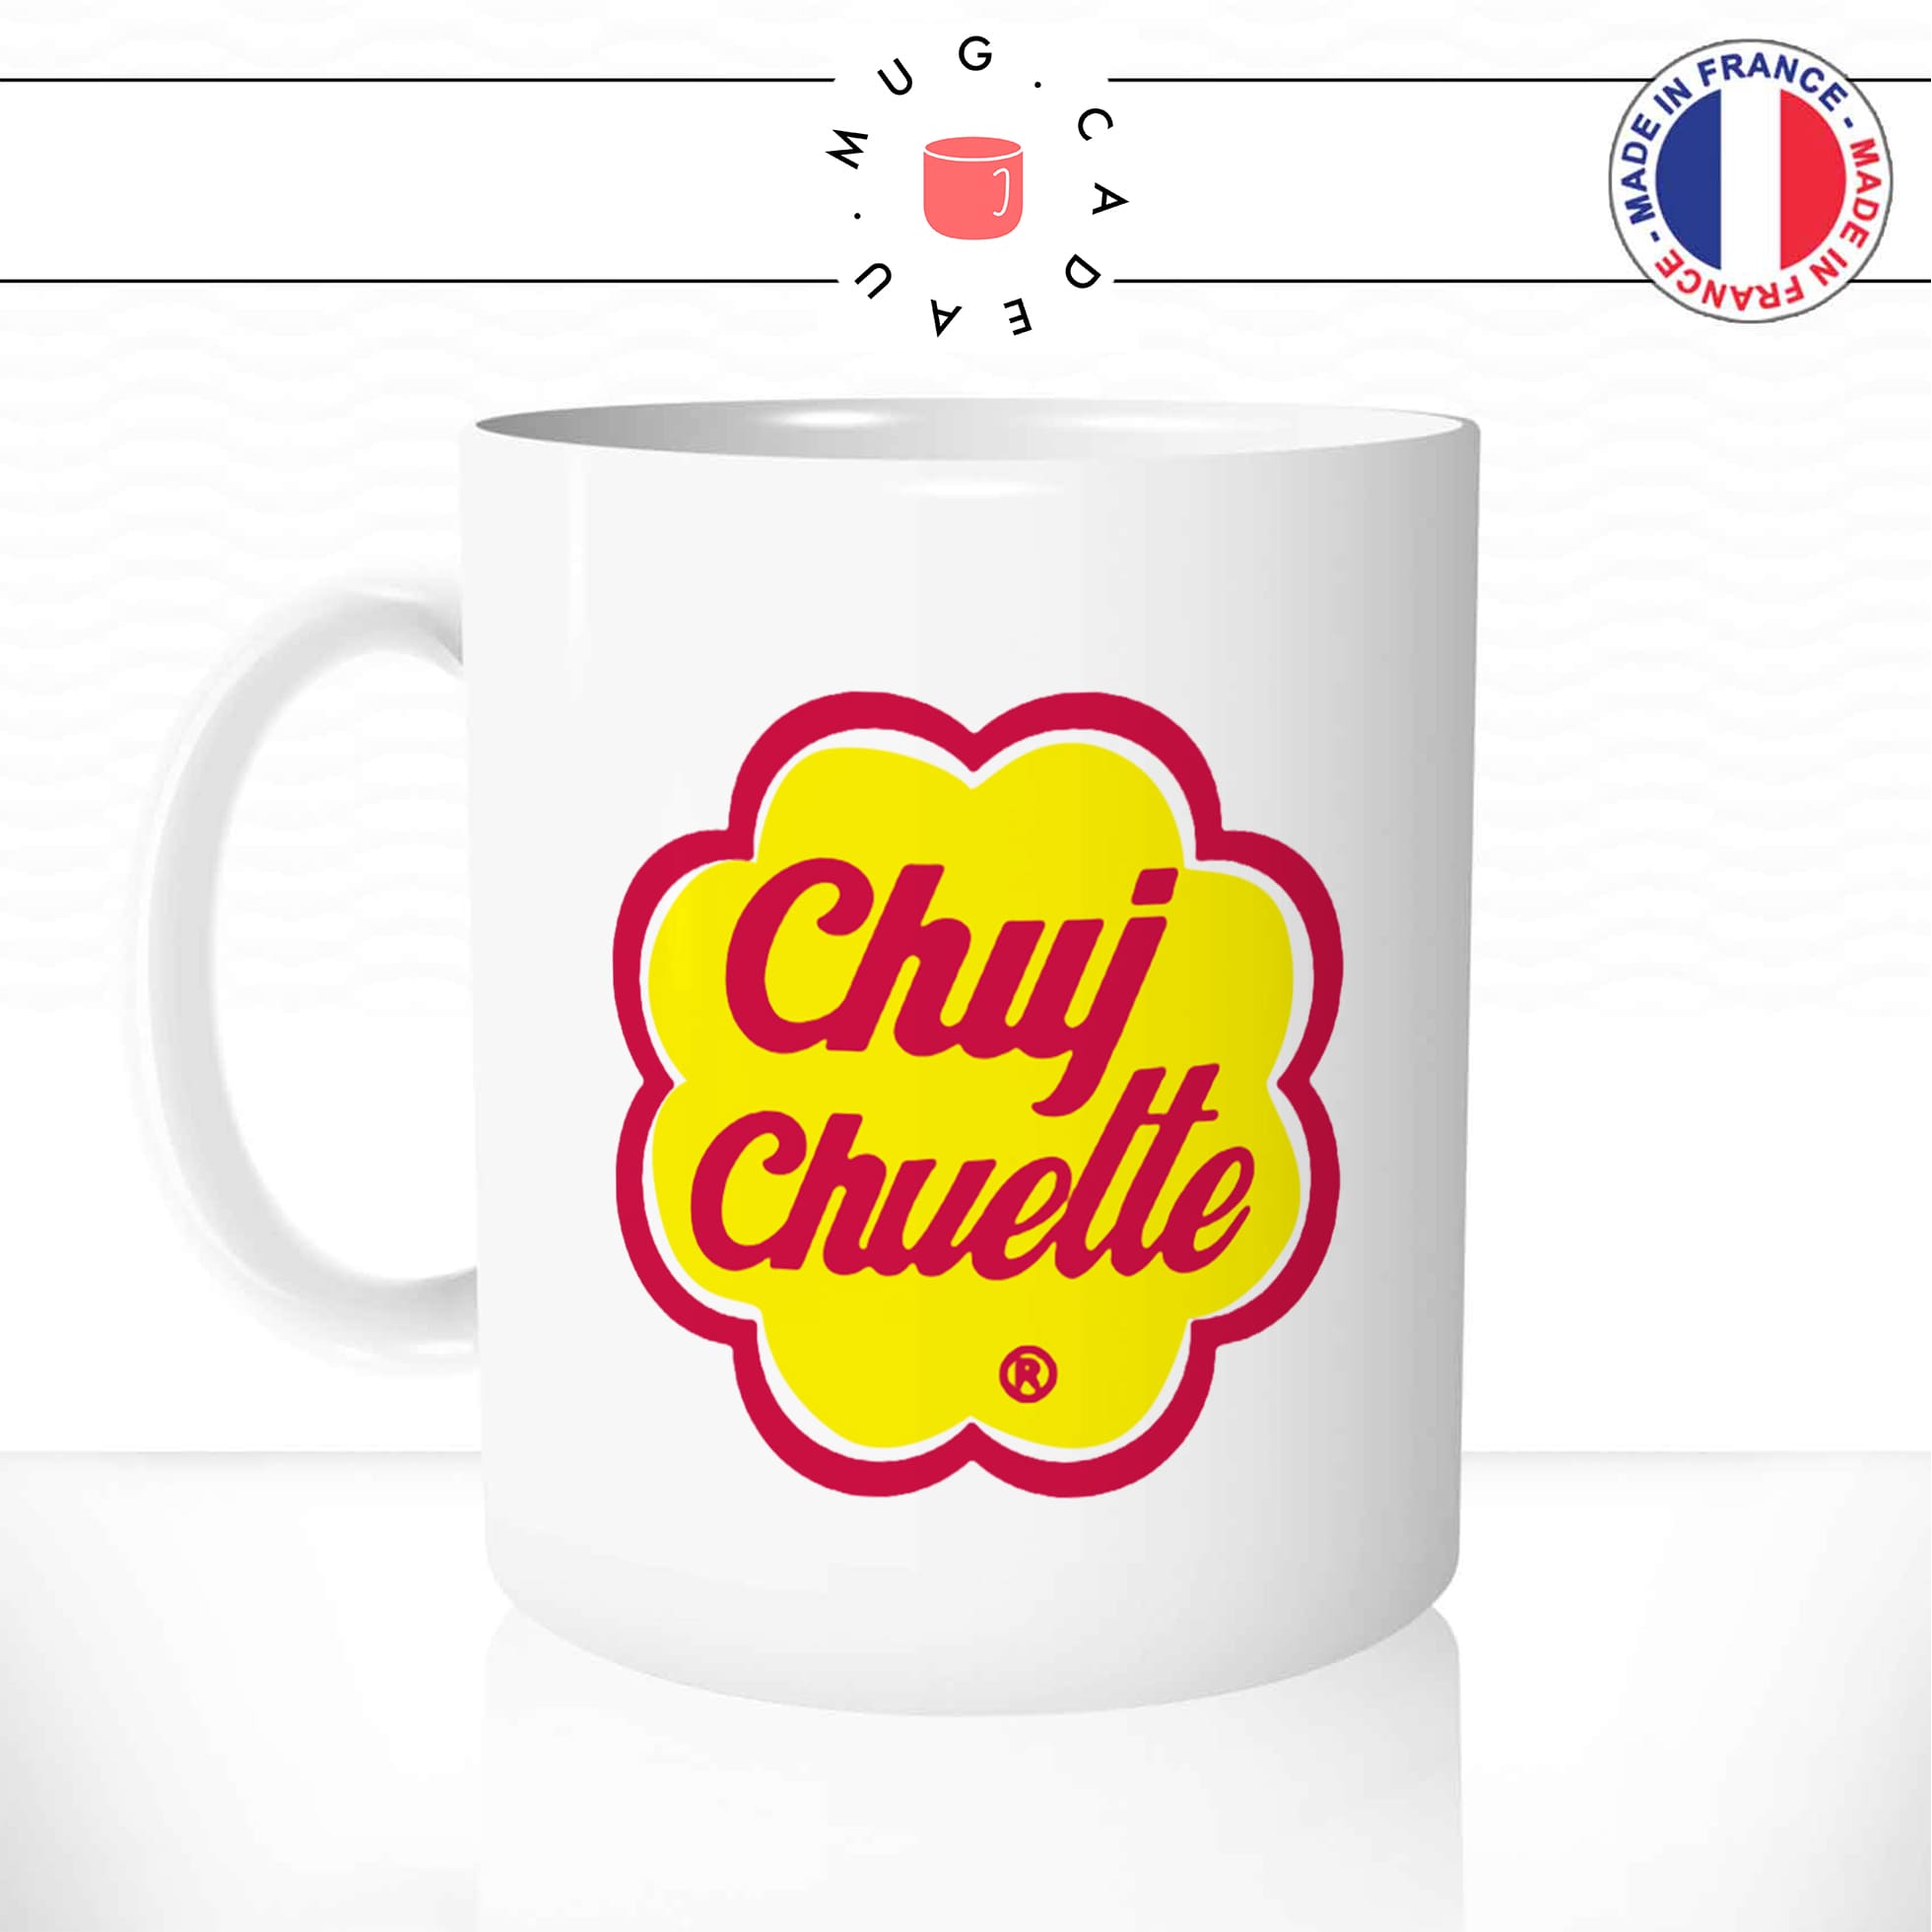 mug-tasse-blanc-unique-chui-chouette-sucette-bonbon-chuppa-homme-femme-parodie-humour-fun-cool-idée-cadeau-original-personnalisé